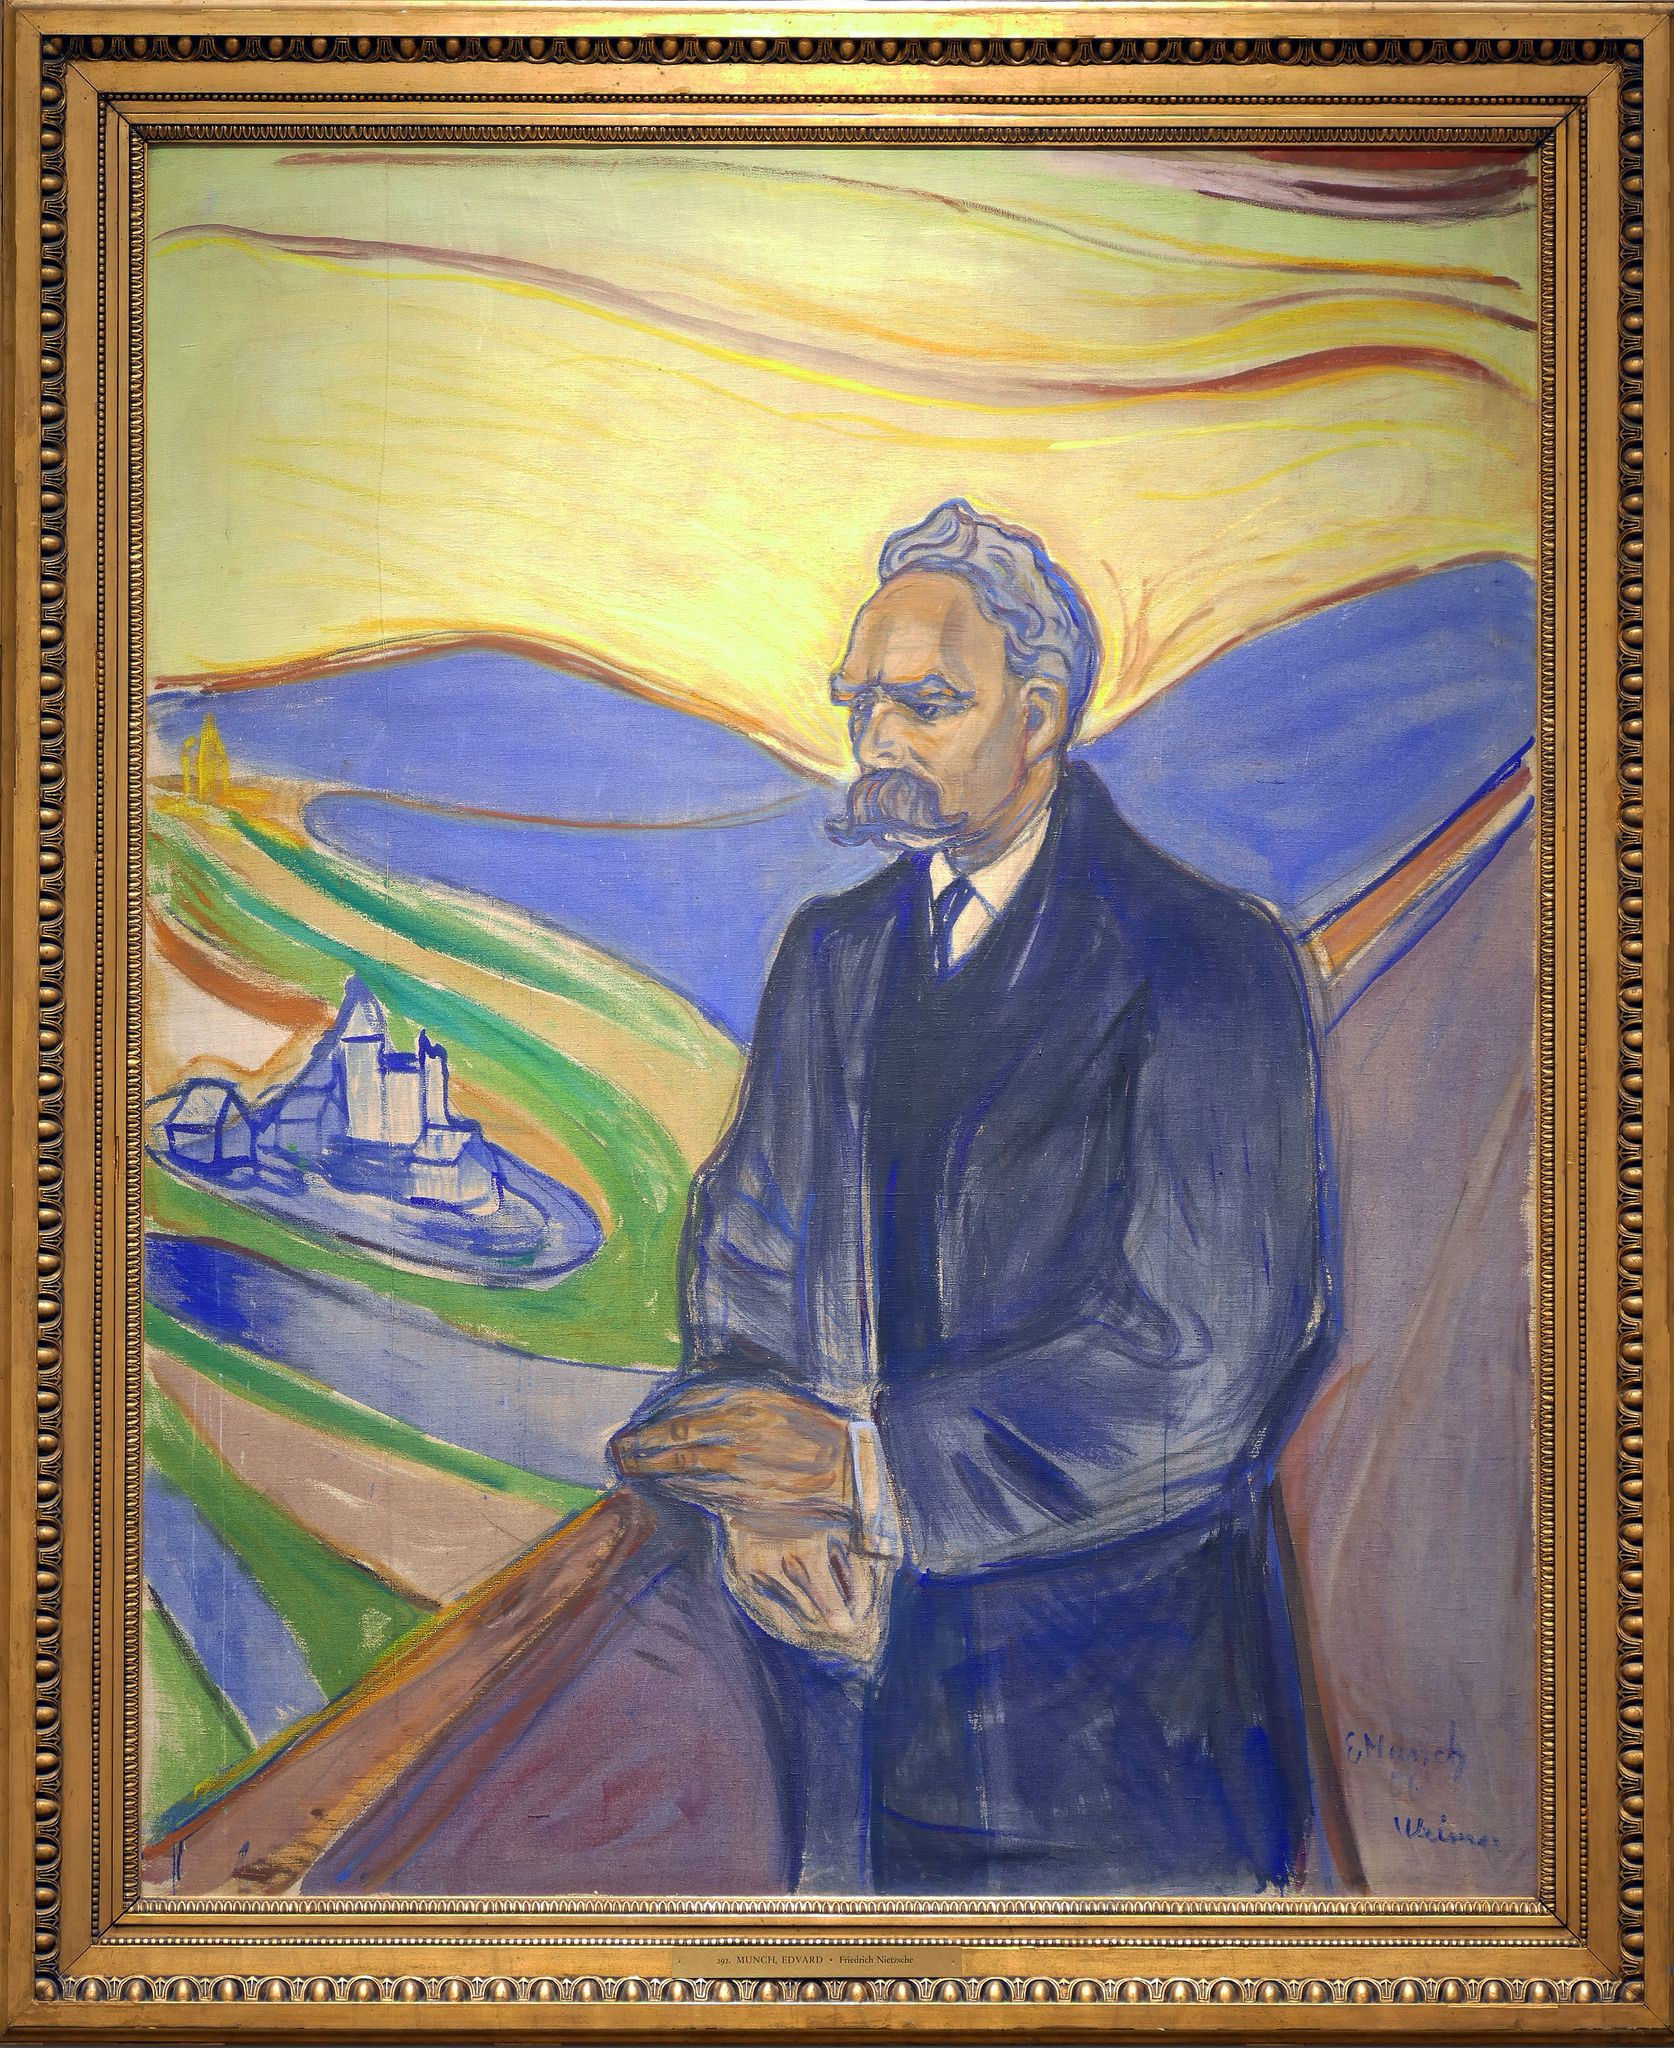 Retrato de Friedrich Nietzsche pintado por Edvard Munch en 1906, este conocido pintor expresionista fue más conocido por su famosa pintura 